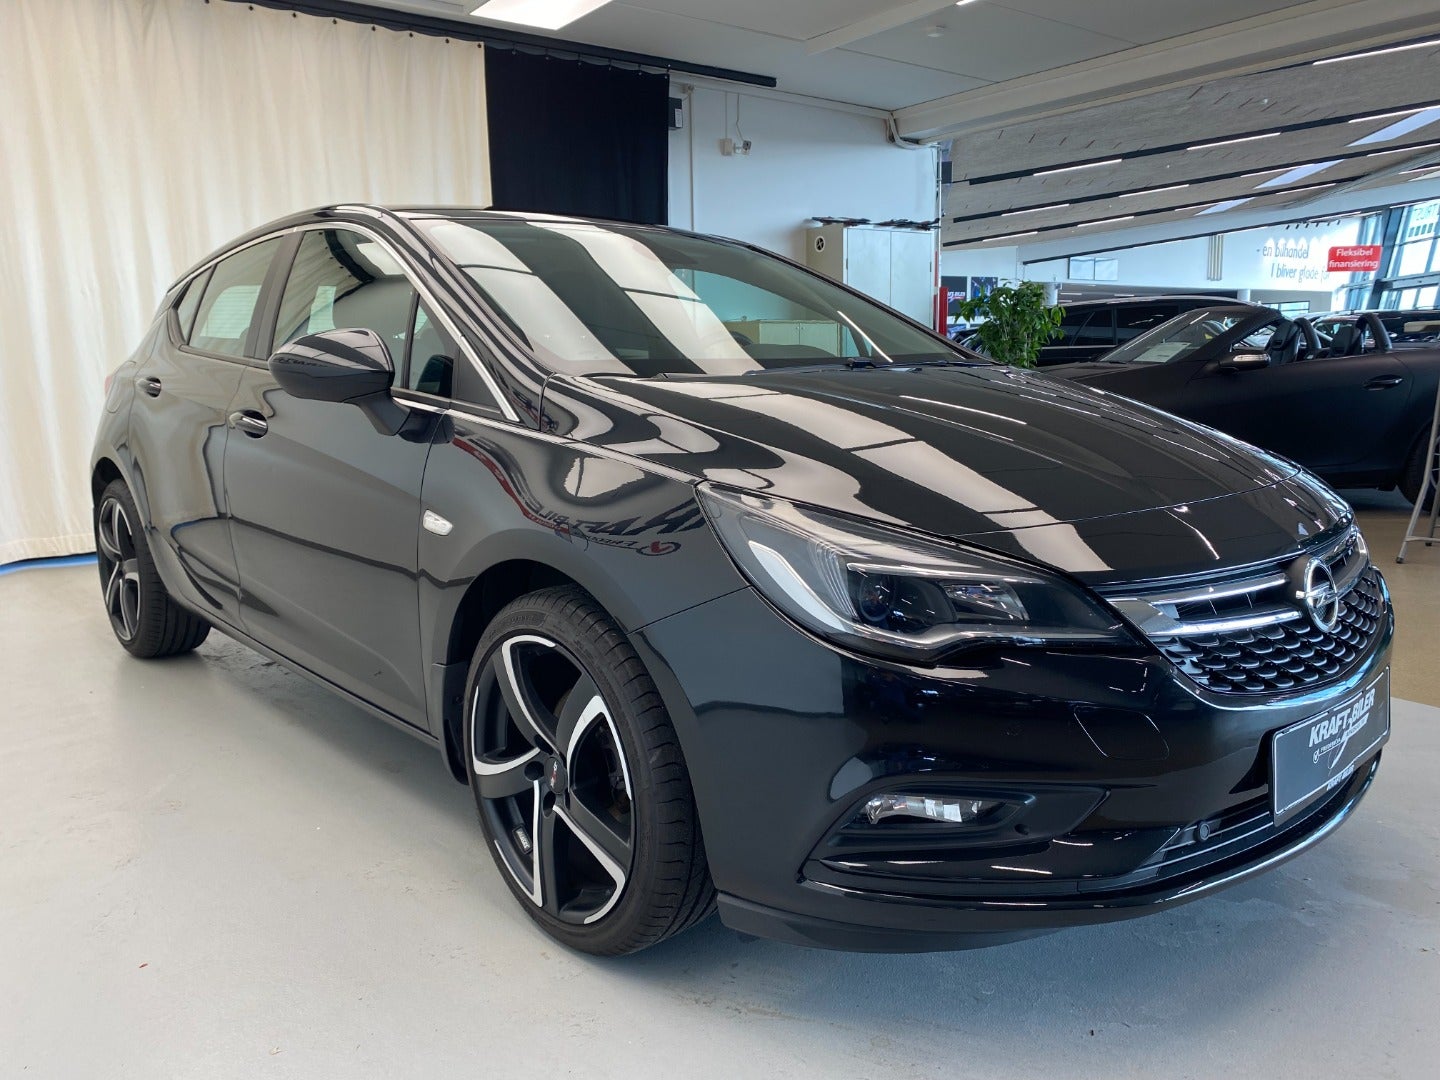 Billede af Opel Astra 1,4 T 150 Enjoy